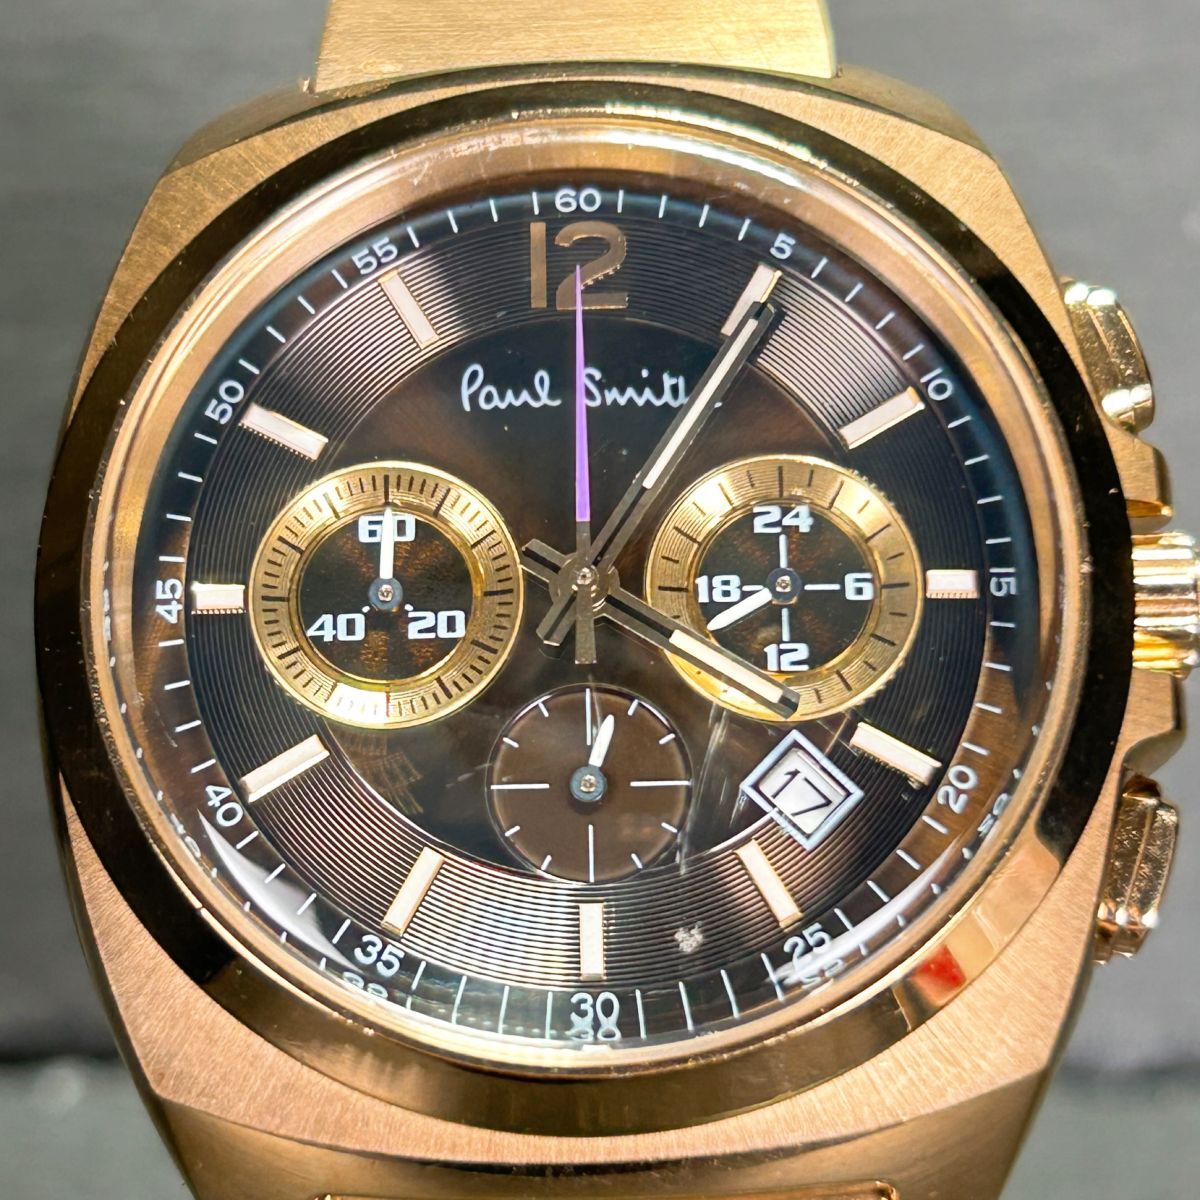  редкий Paul Smith Paul Smith 0520-T013694 наручные часы кварц аналог хронограф календарь Gold новый товар батарейка заменена рабочее состояние подтверждено 